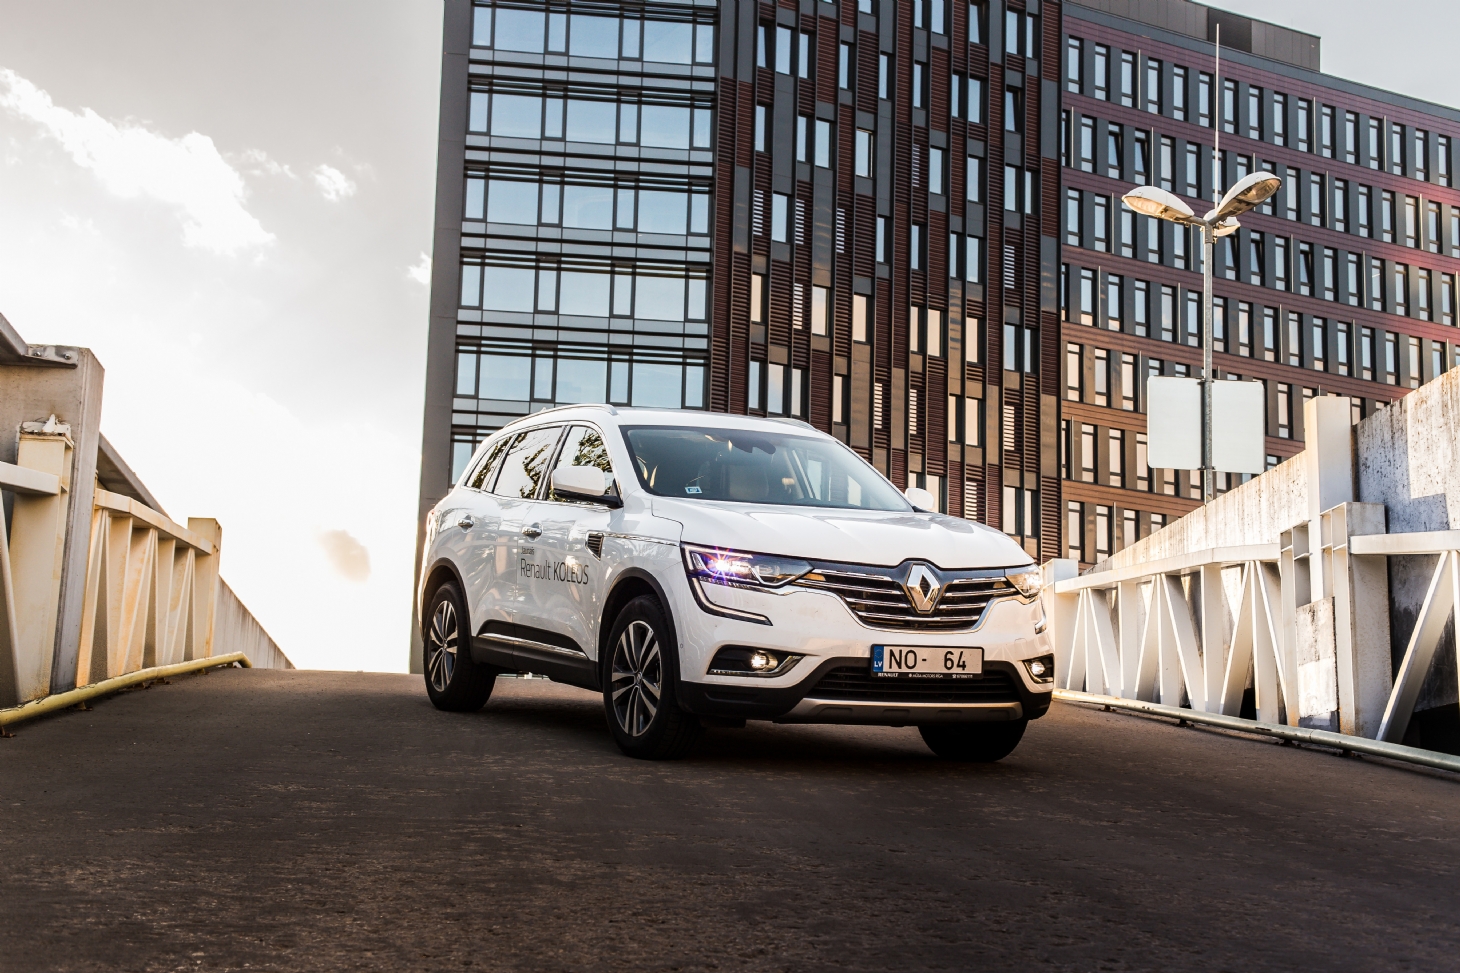 Renault vai apostar tudo nos carros elétricos. Saiba mais | Jornal da Orla